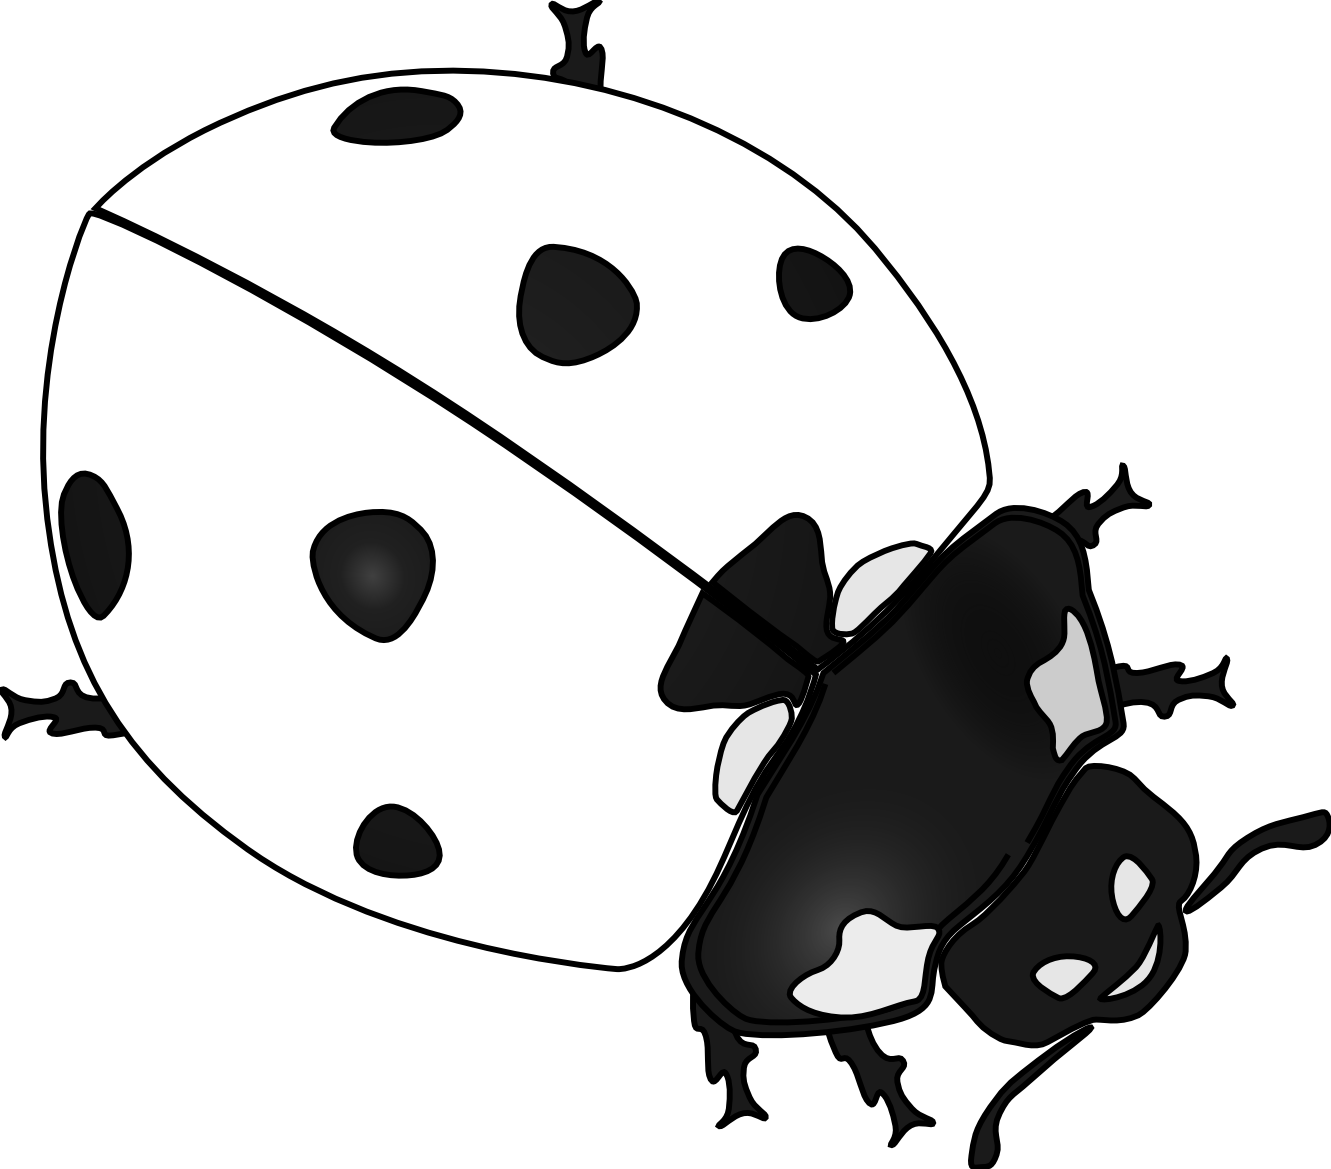 Drawn Ladybug Clip Art - Ladybug Black And White Drawing (1331x1169)